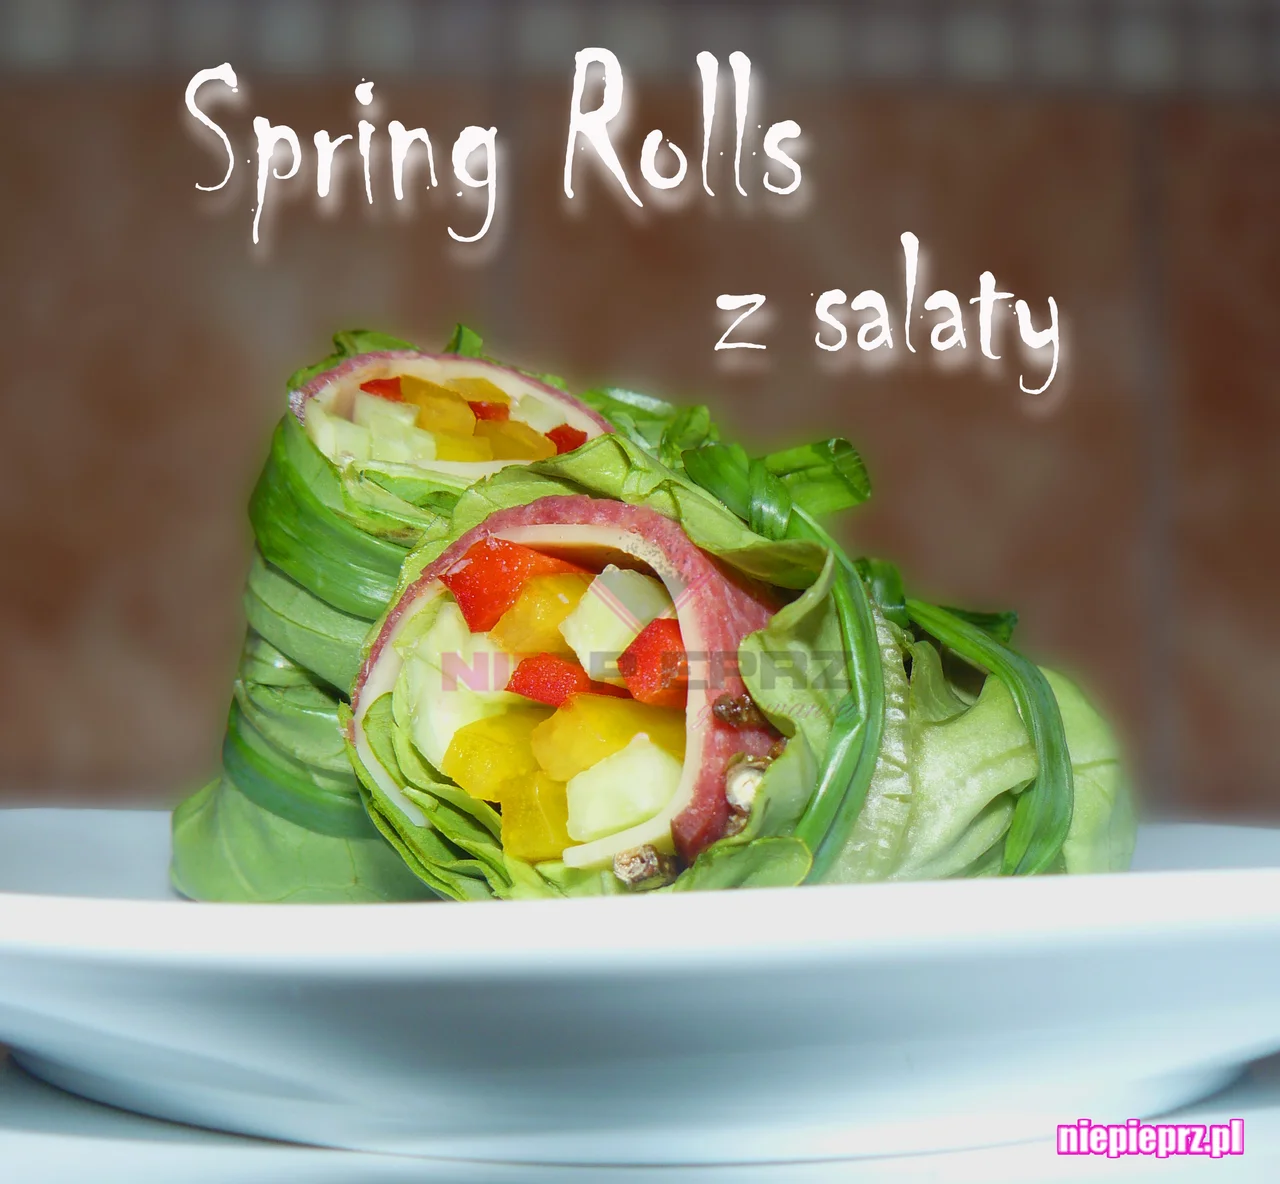 Spring Rolls z sałaty, zdrowa przekąska